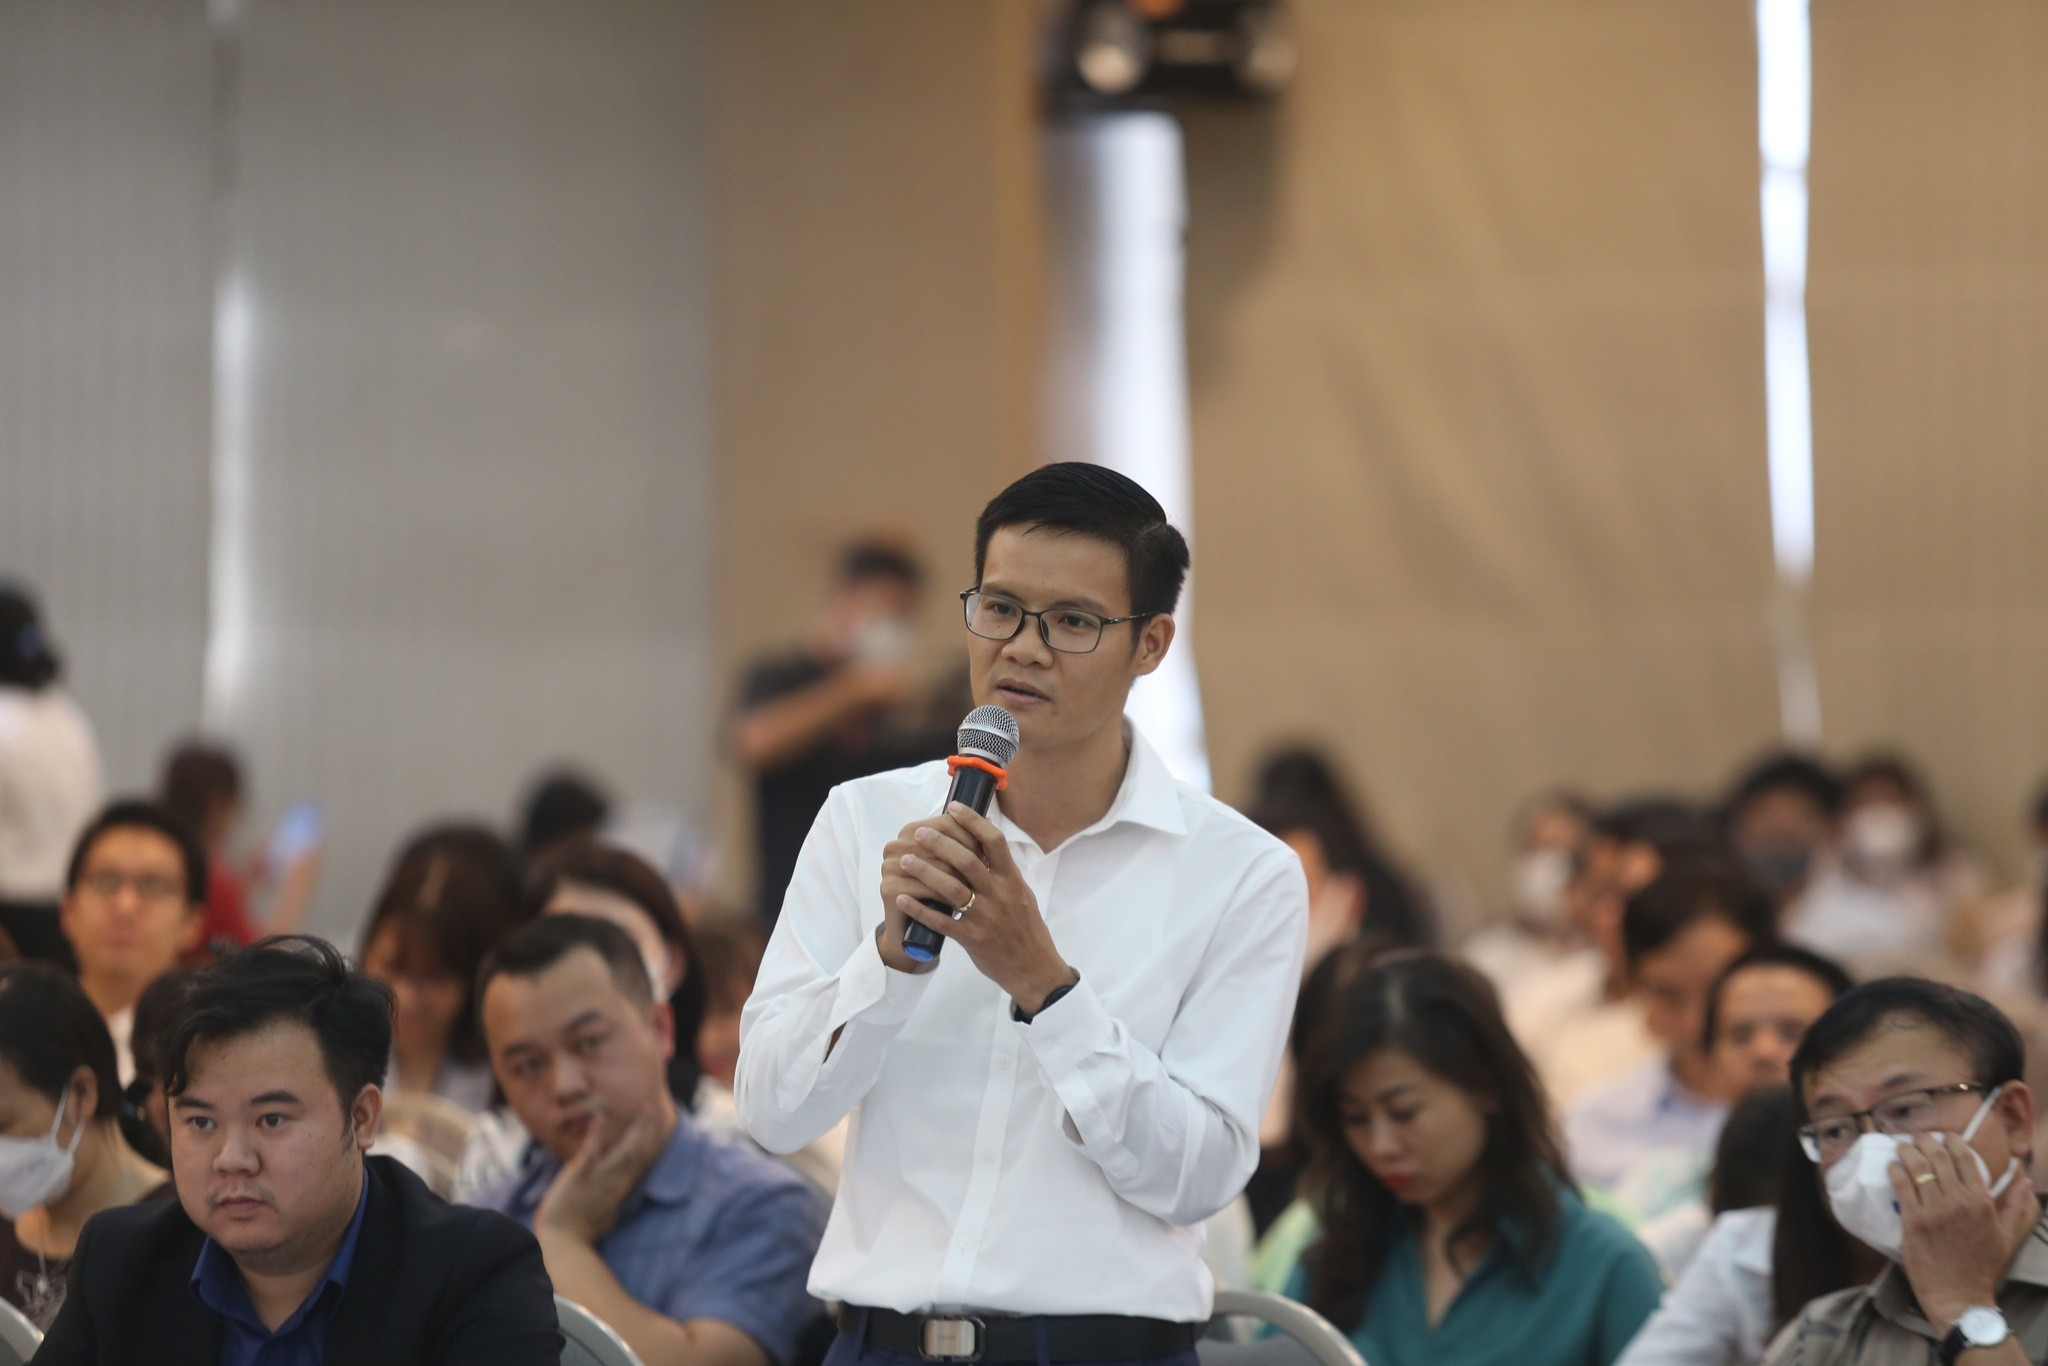 
ThS. Nguyễn Văn Đỉnh, chuyên gia pháp lý, đầu tư bất động sản
